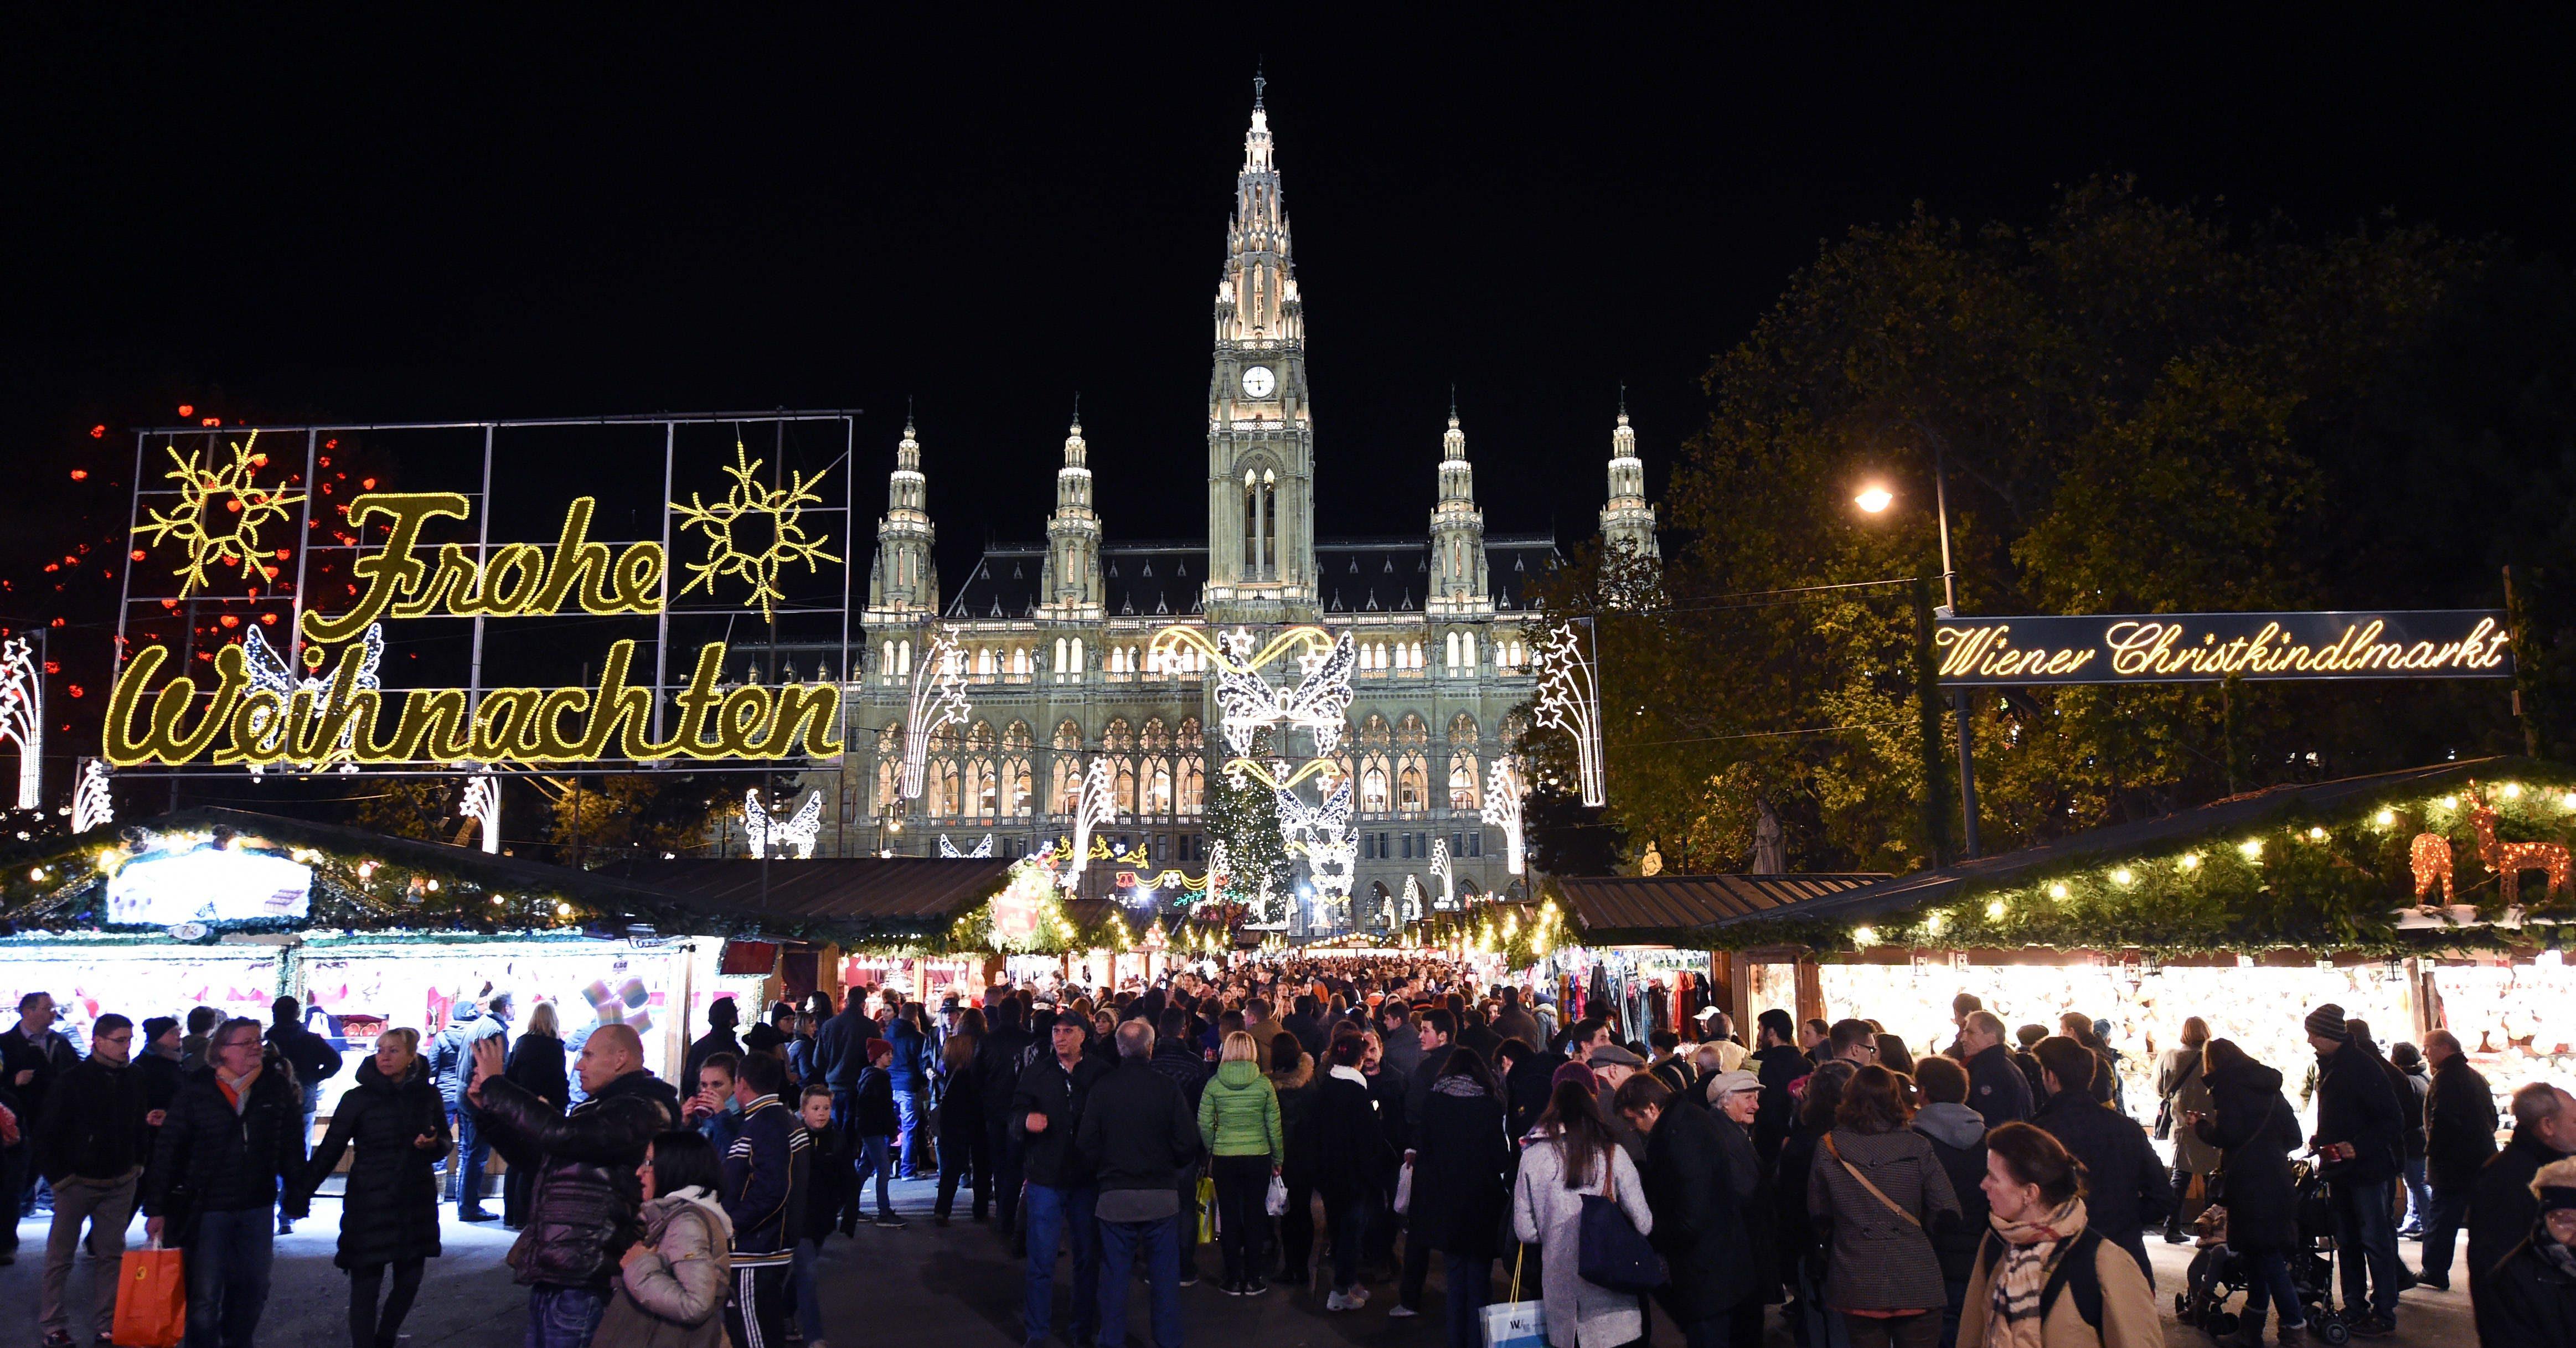 Christkindlmarkt in Vienna